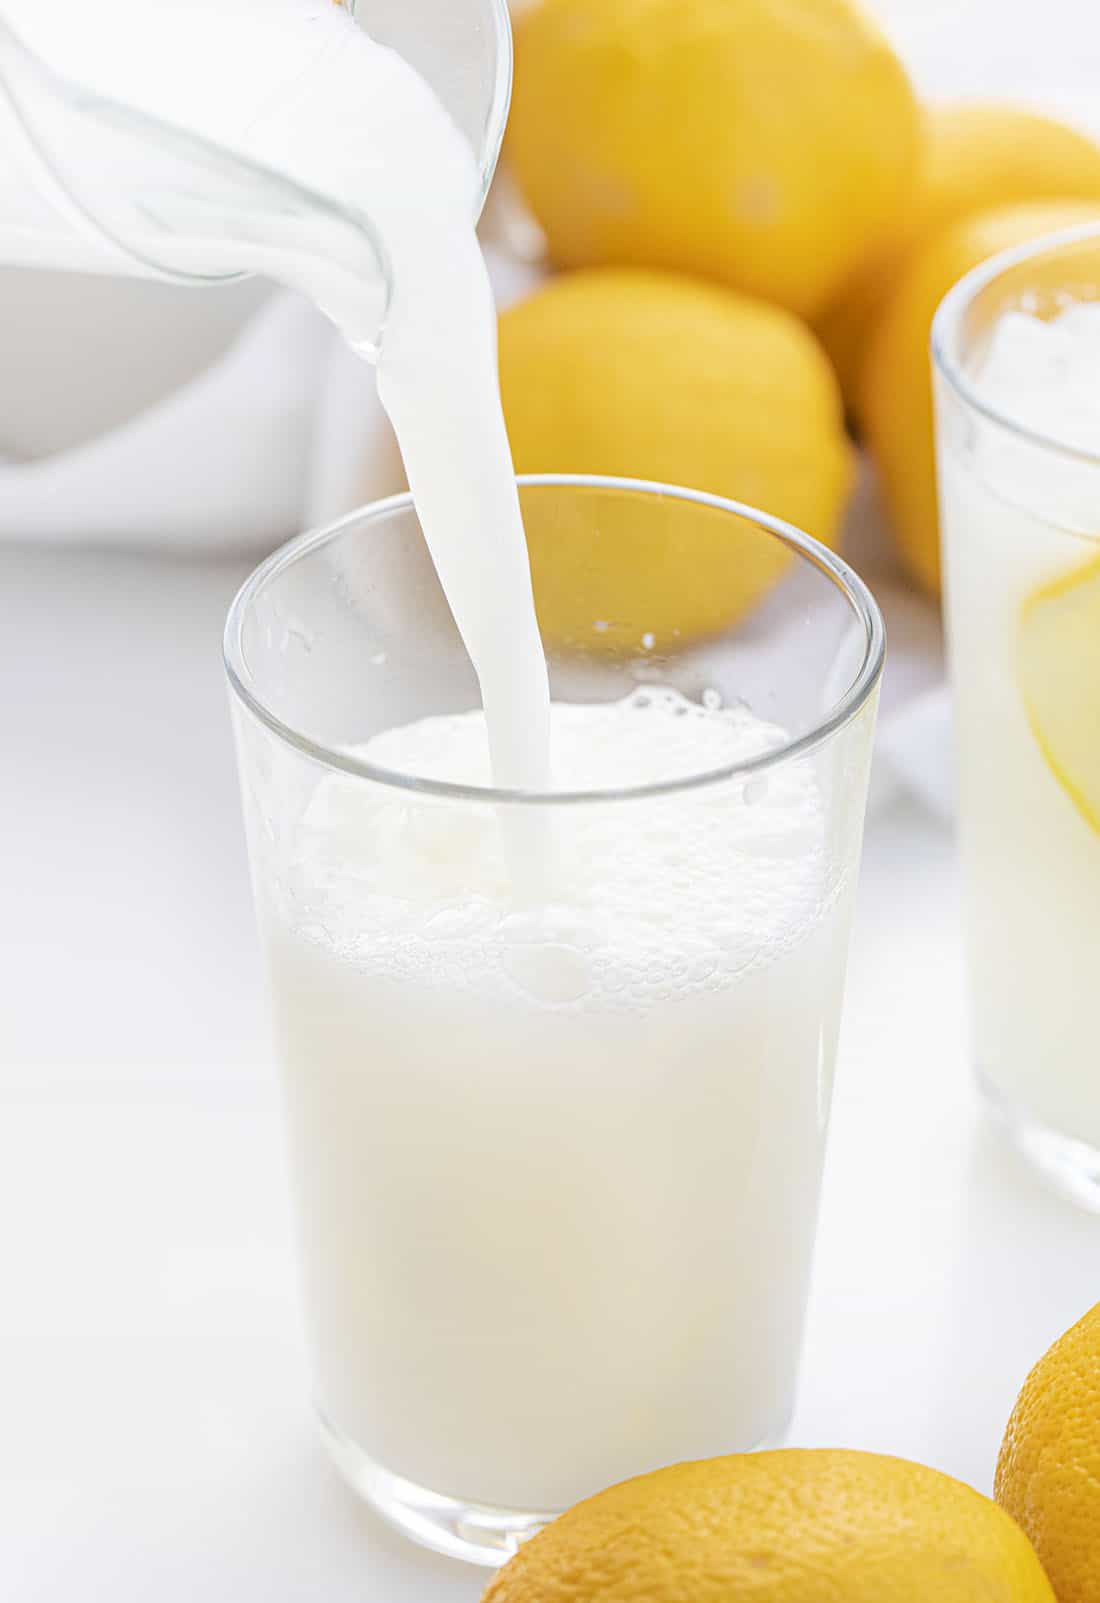 倒入奶油柠檬水-巴西柠檬水配方到玻璃杯